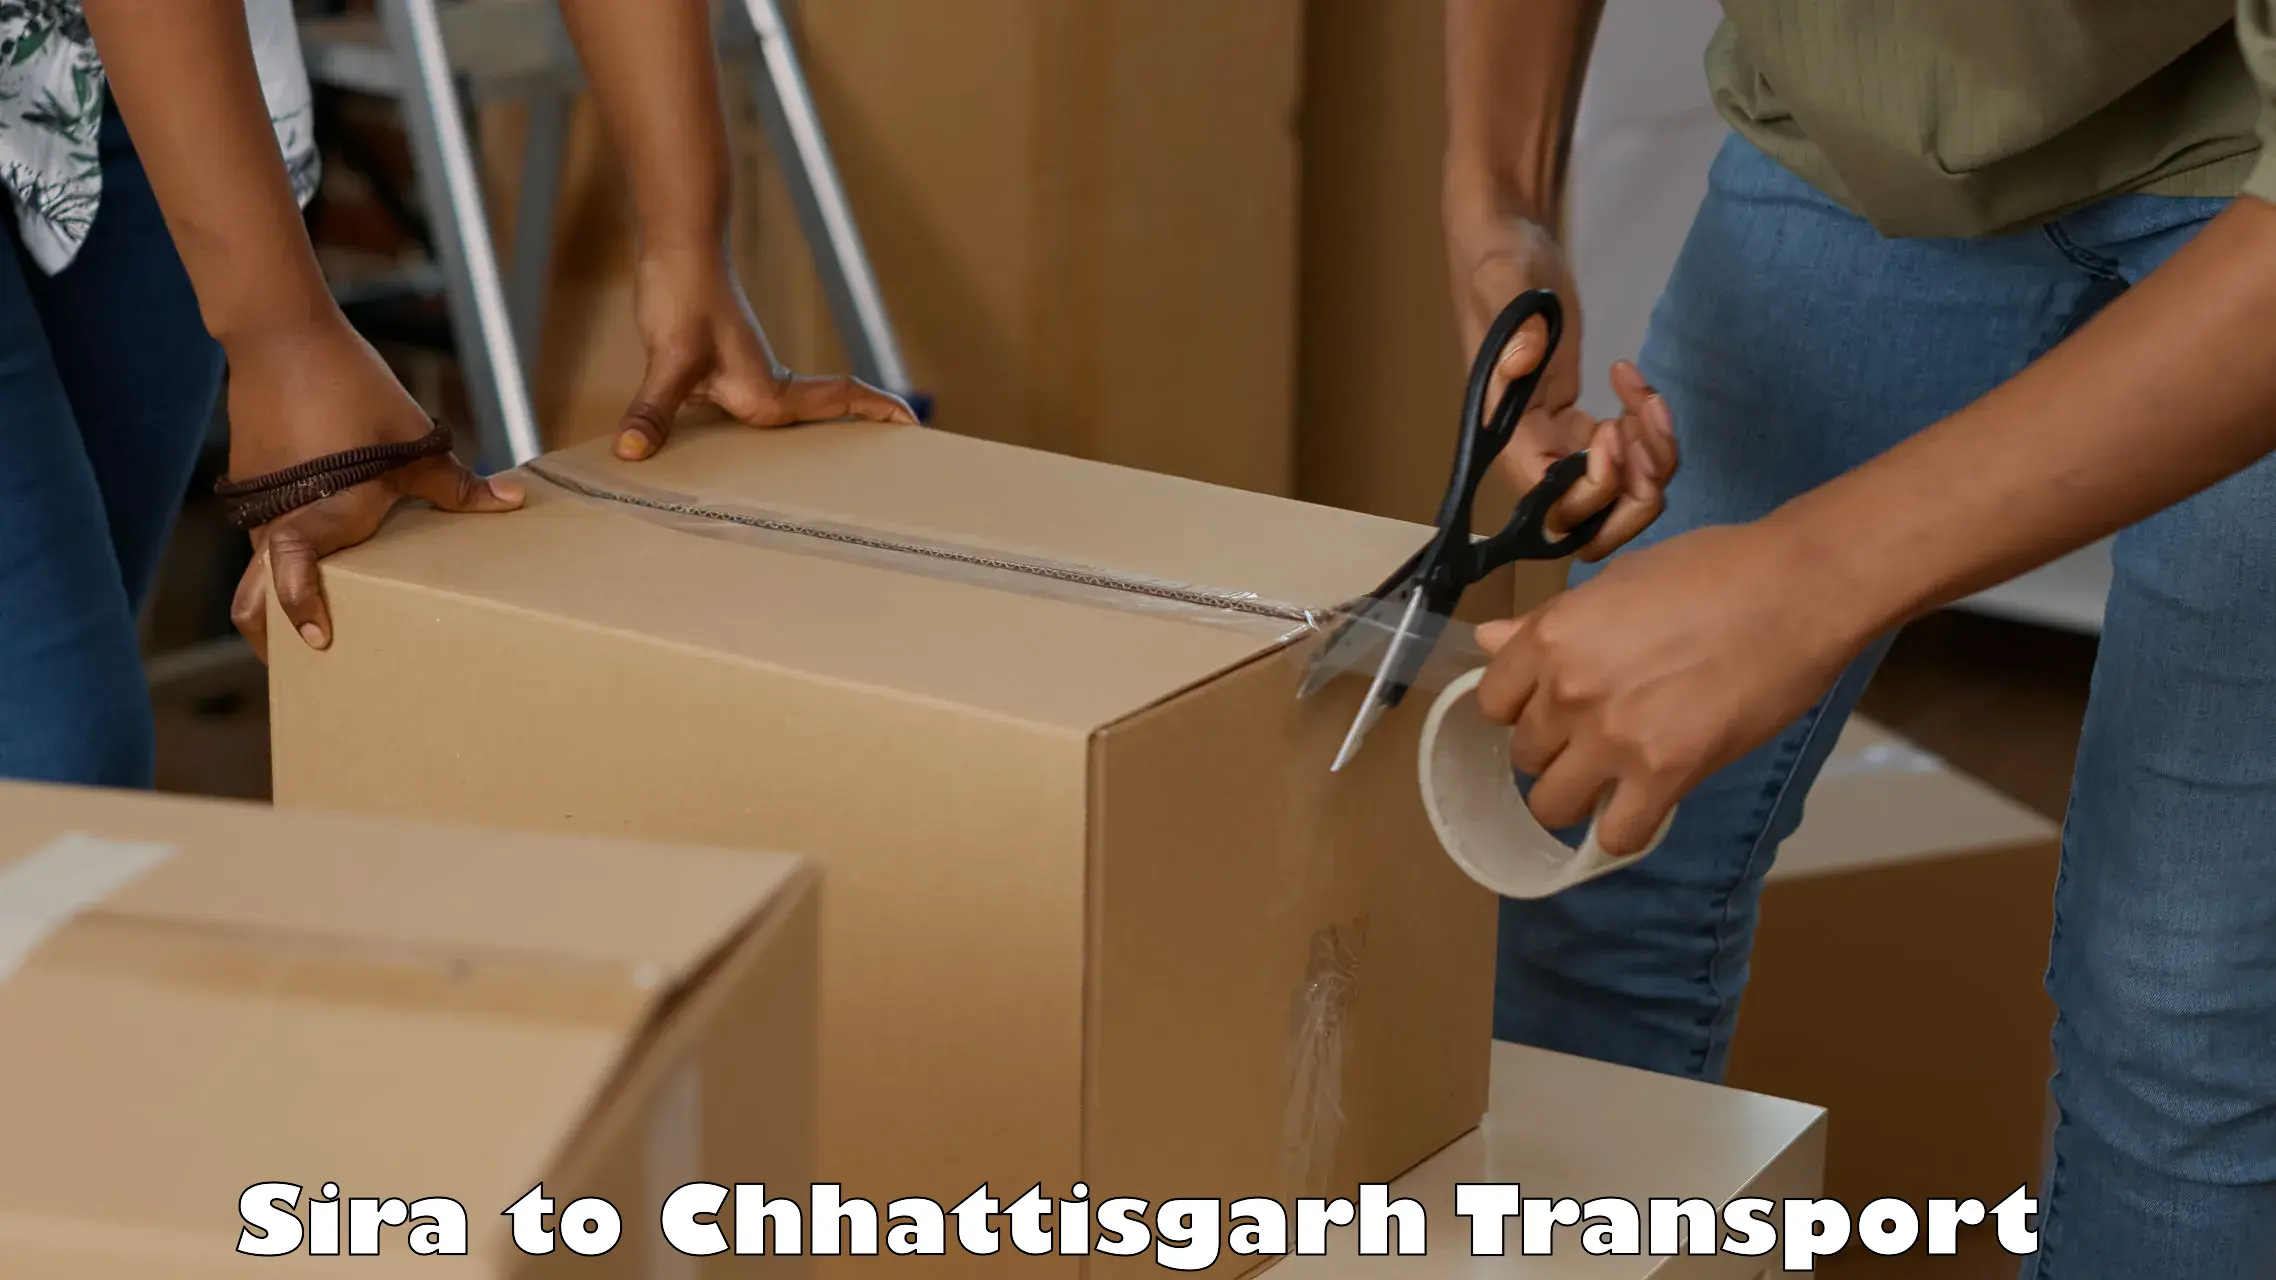 Transport in sharing Sira to Raigarh